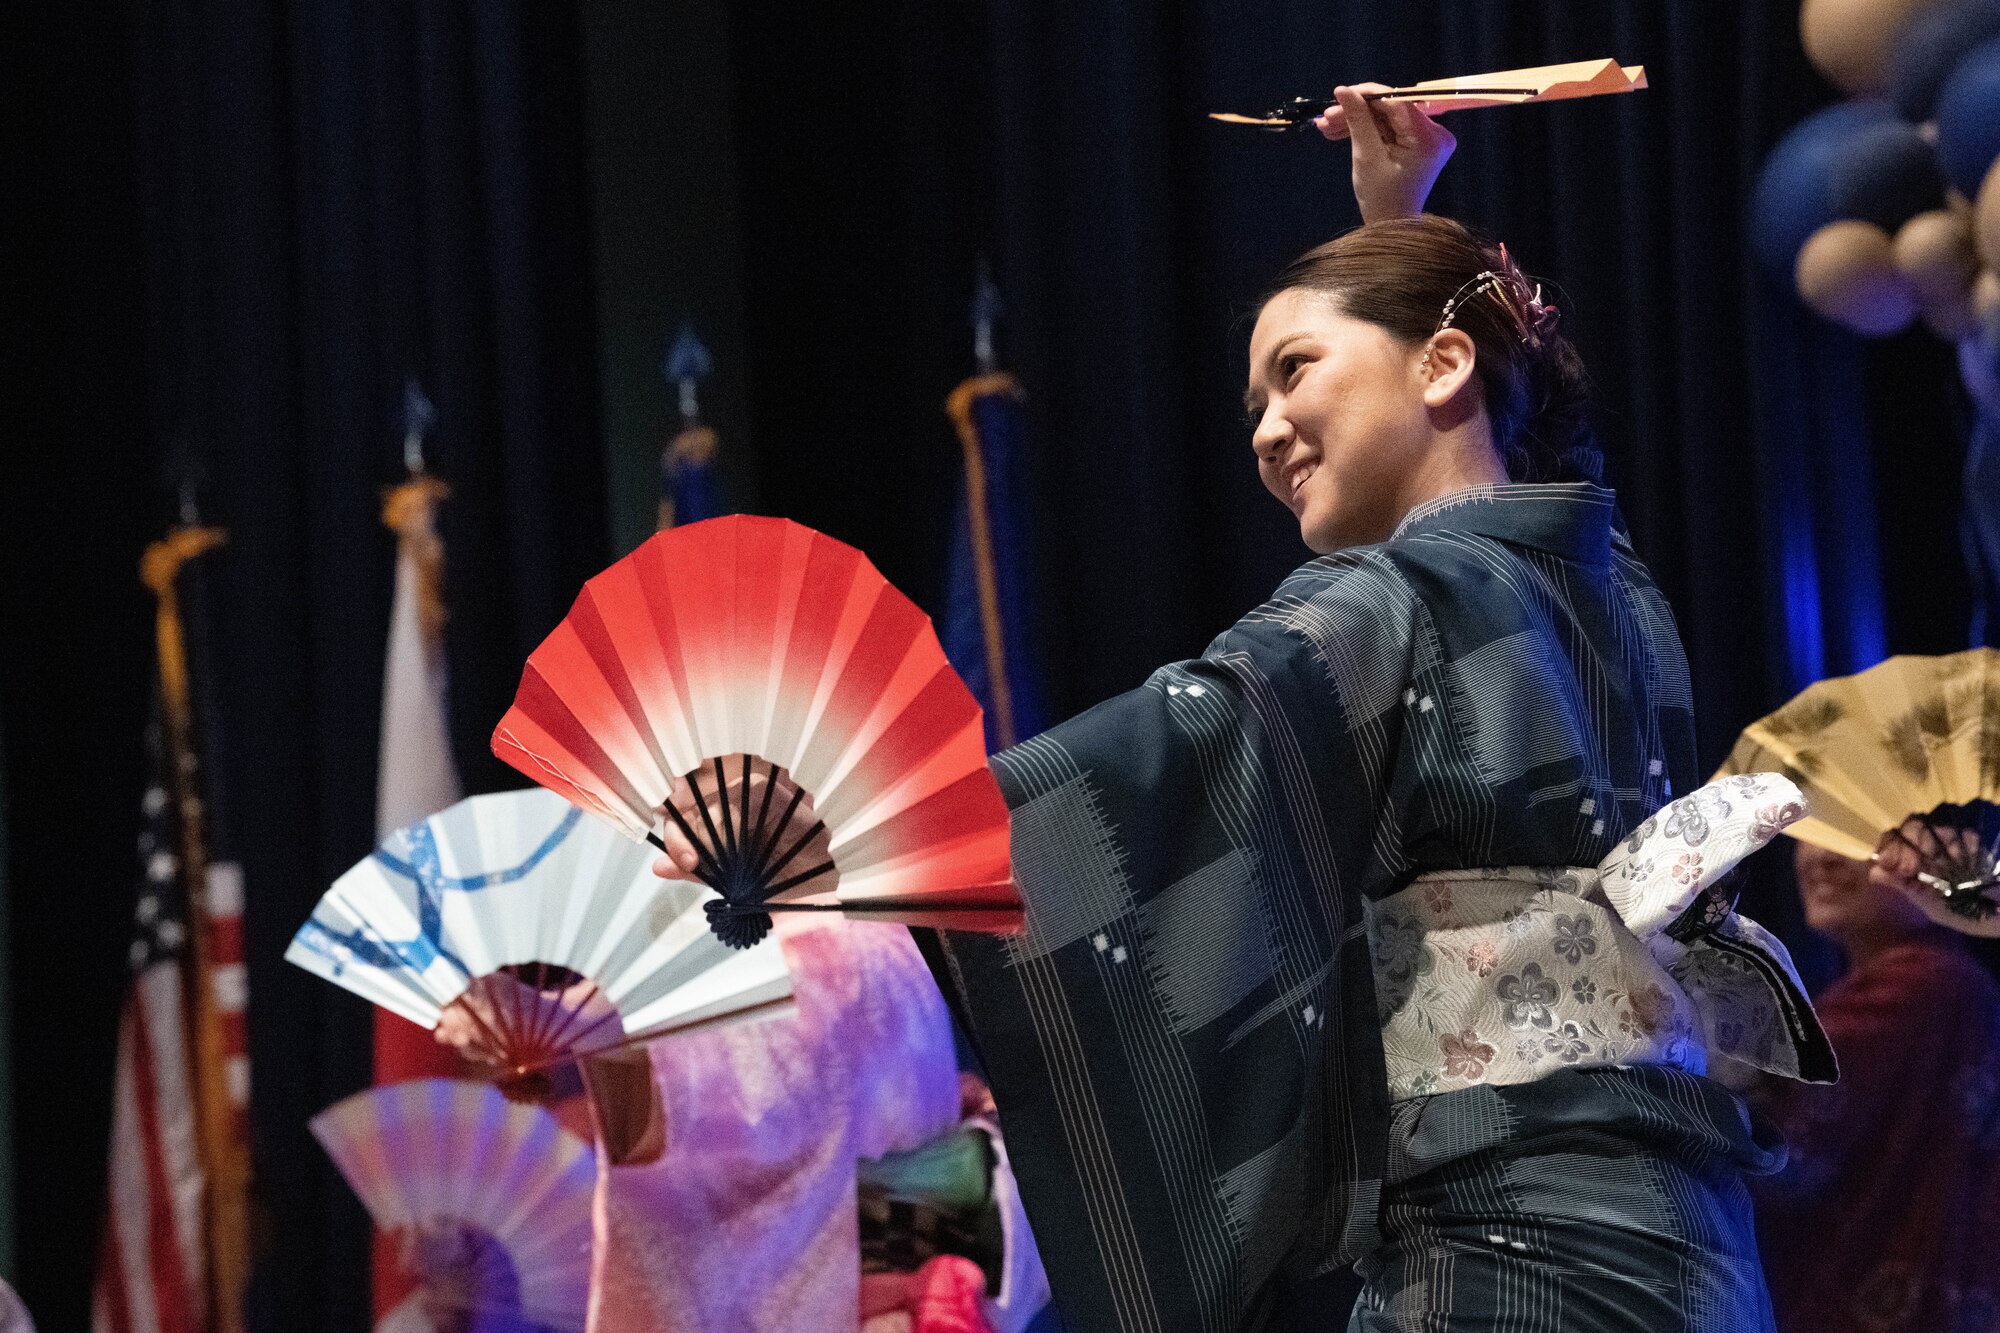 Yokota Tanabata Dancers perform a dance in a traditional Japanese Yukata